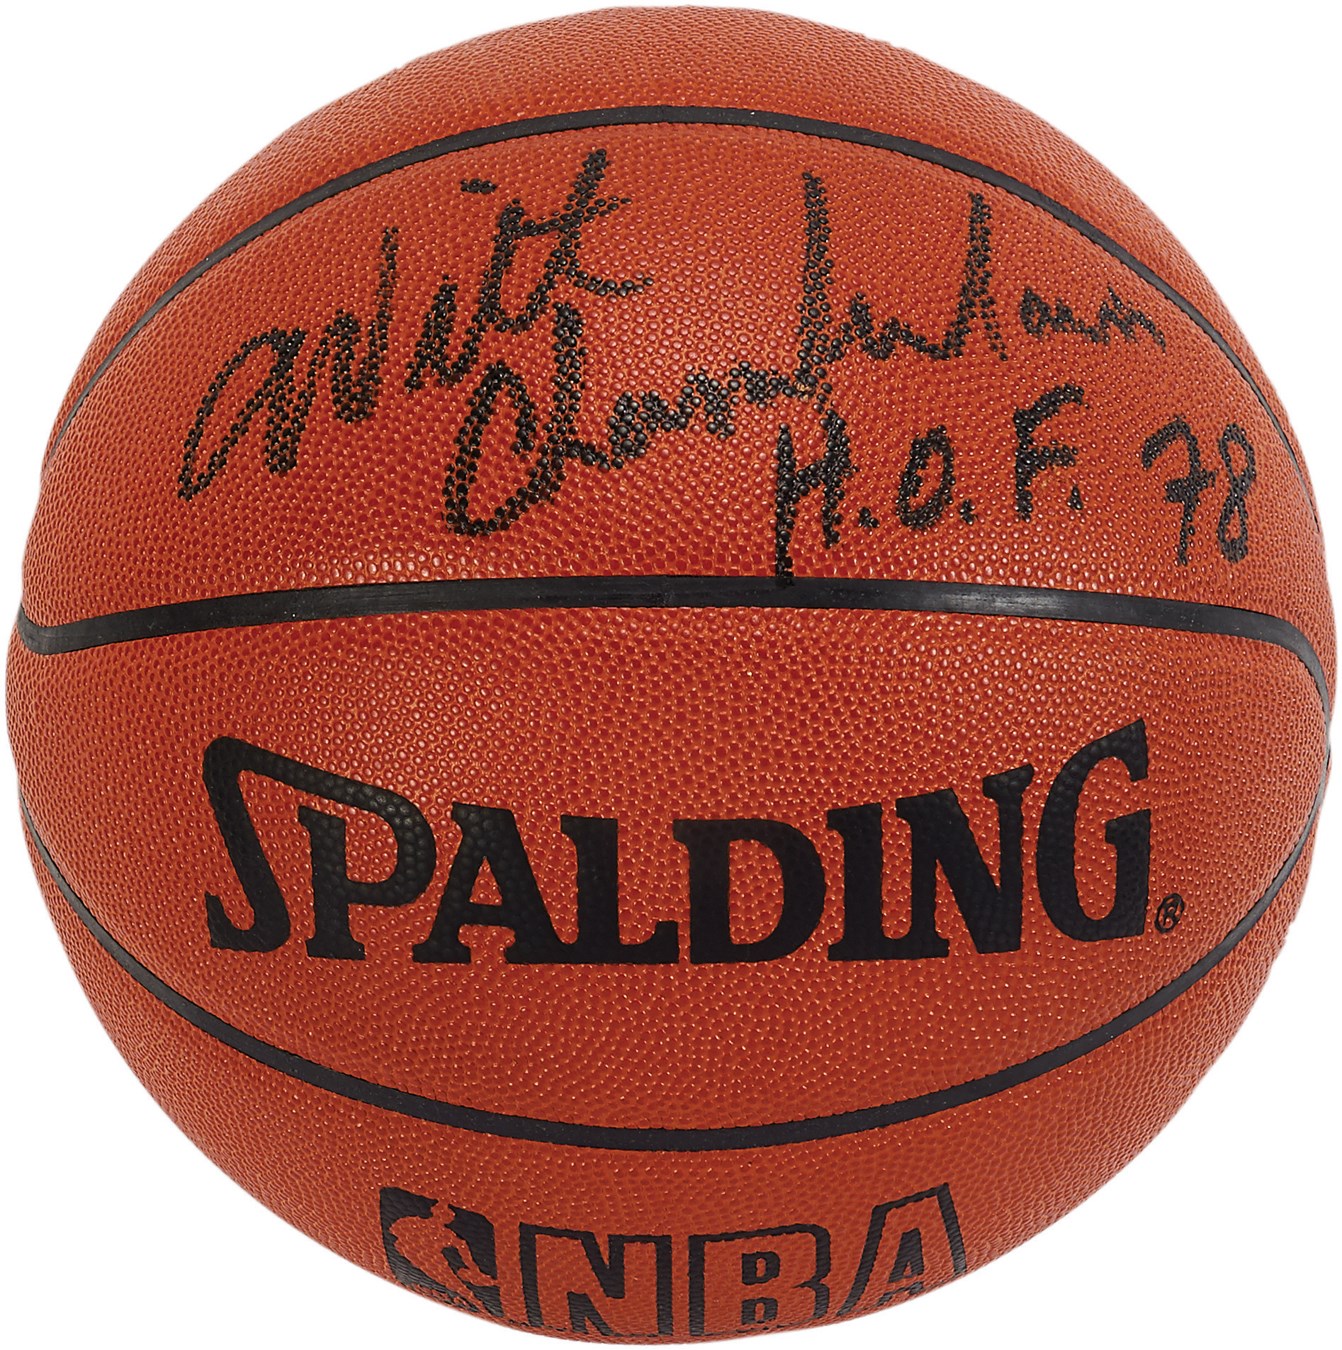 - Wilt Chamberlain Signed "HOF 78" Basketball